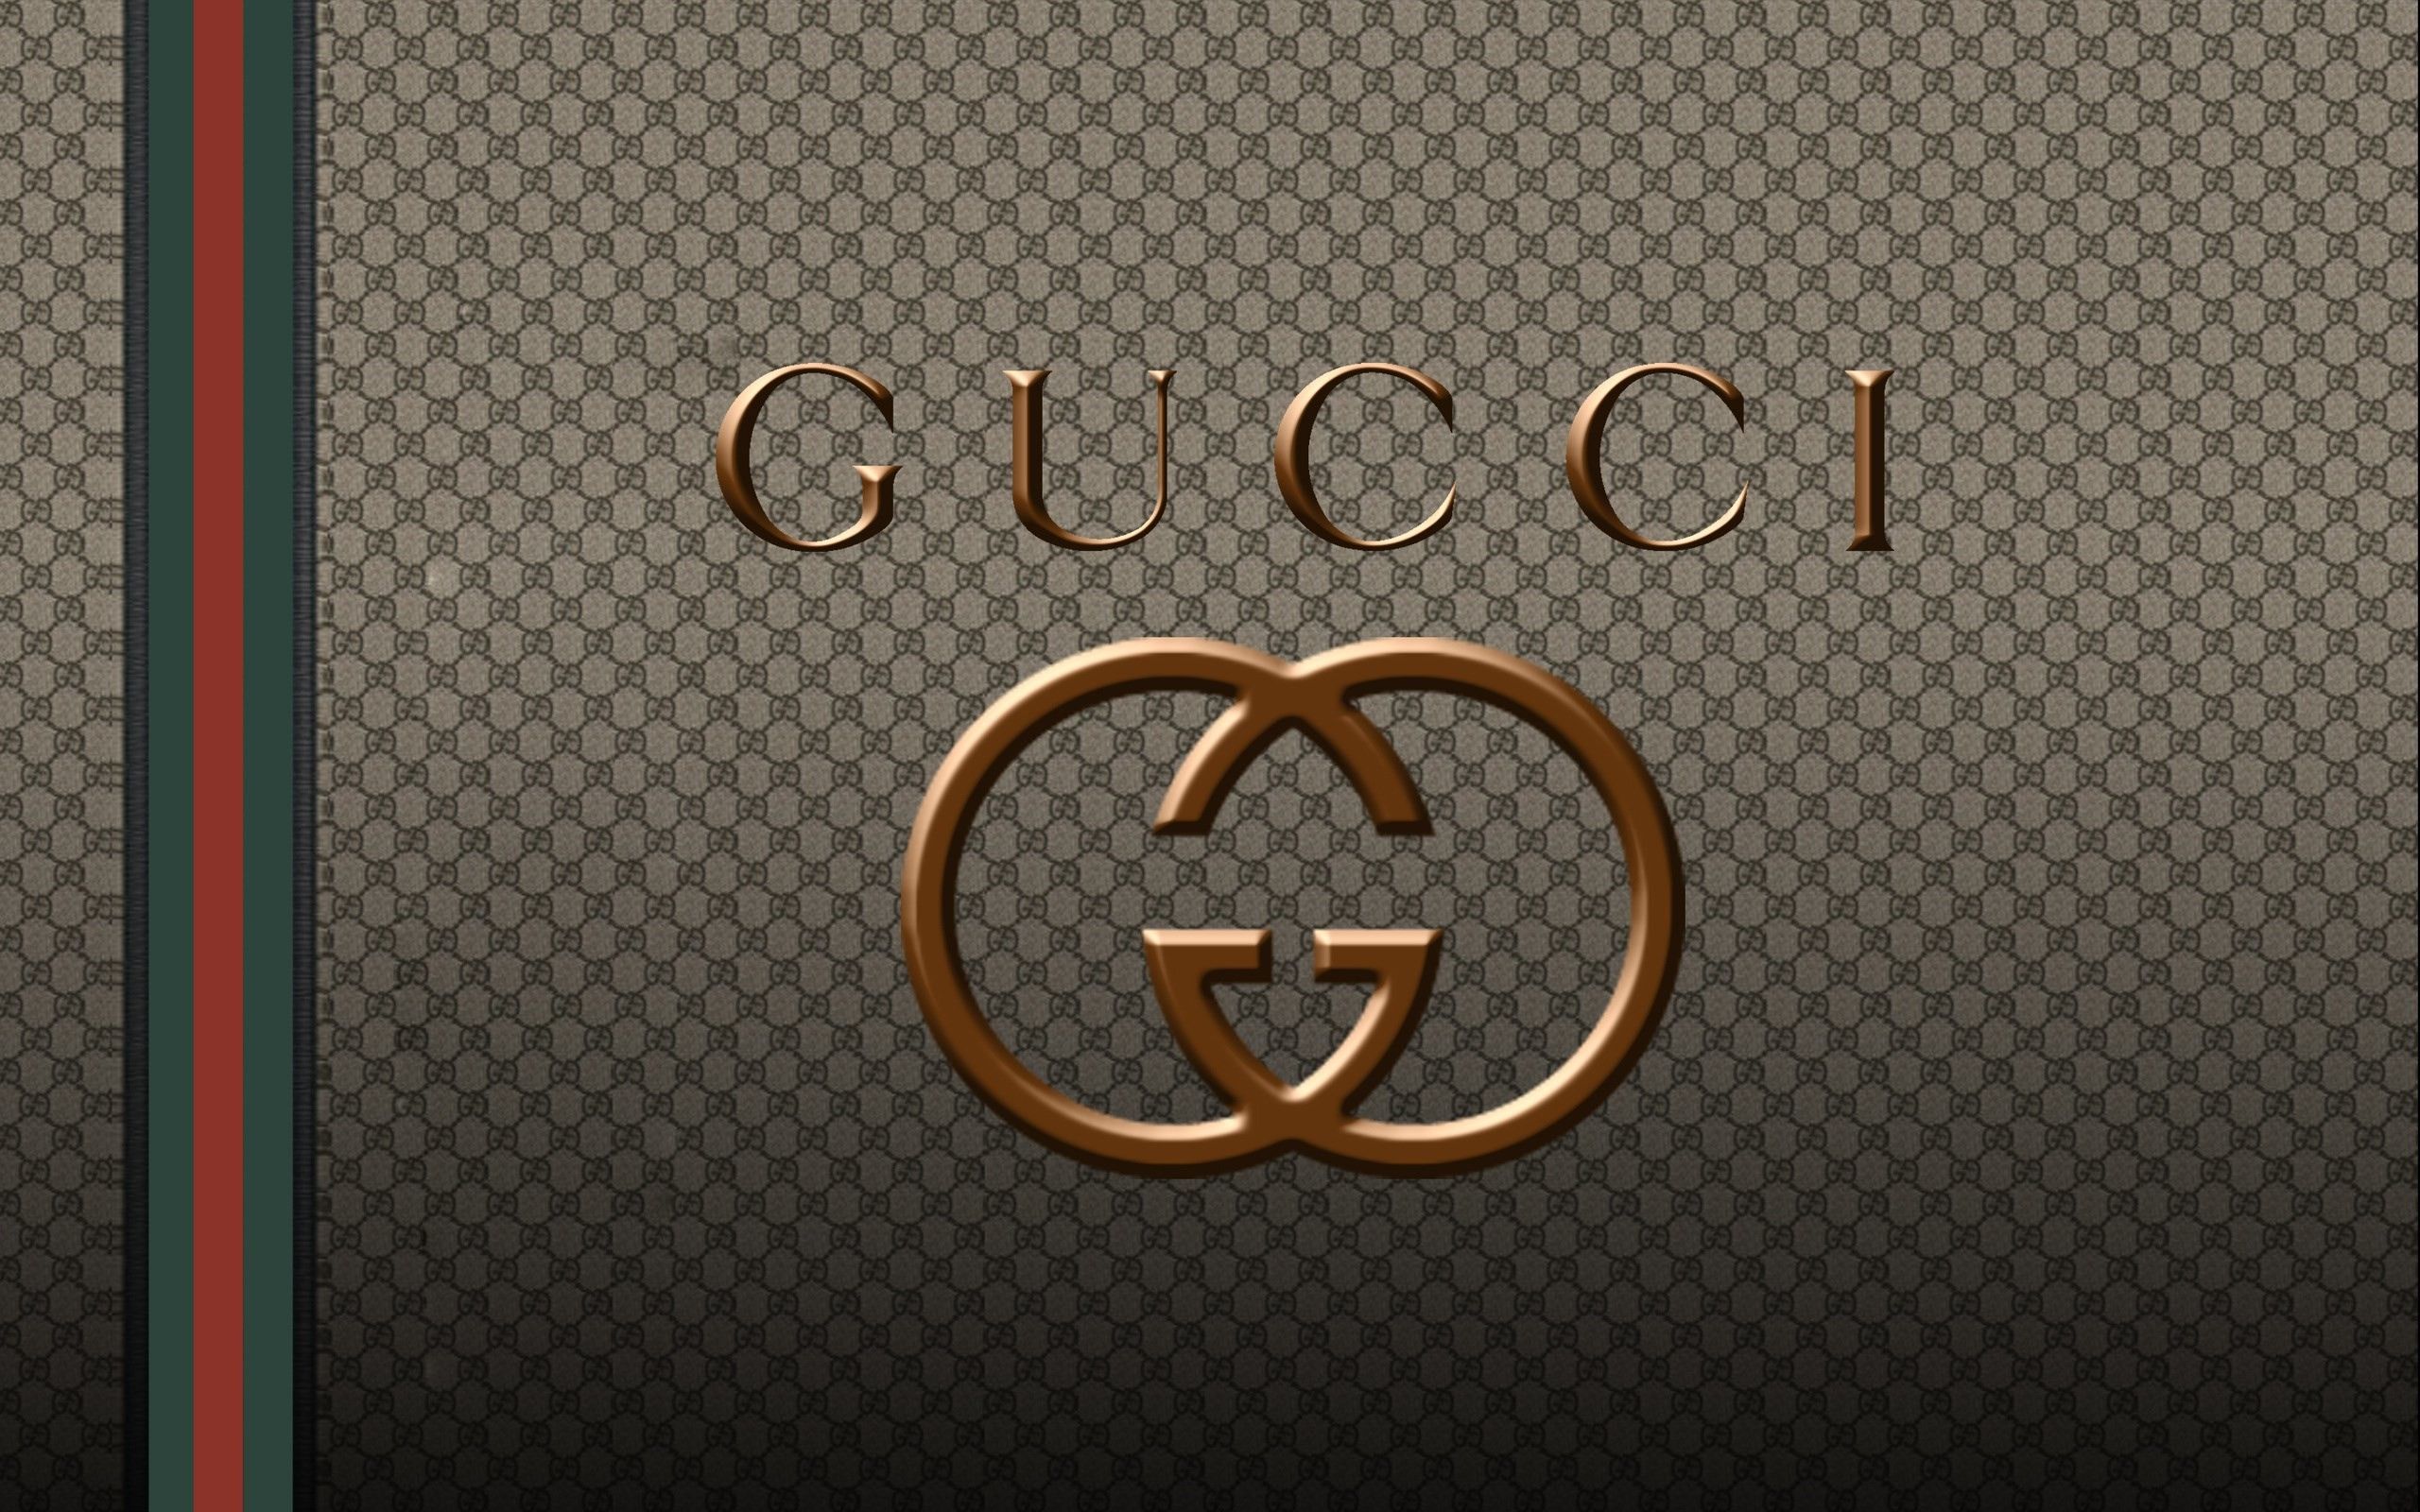 Fondos de pantalla de Gucci - FondosMil